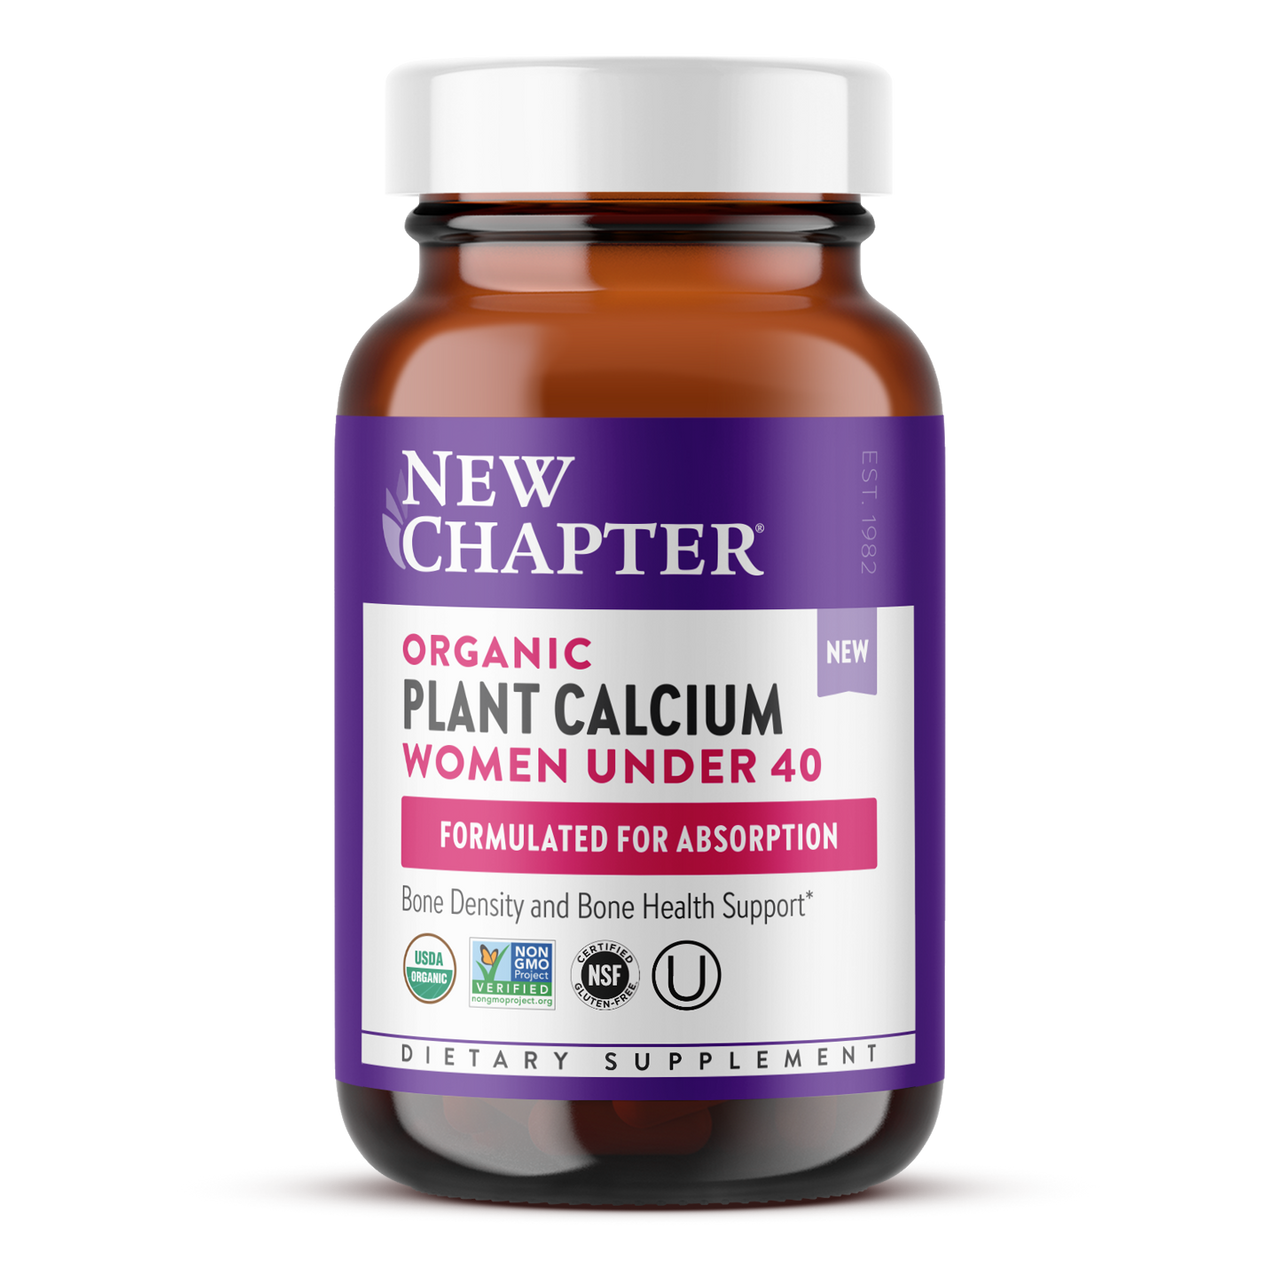 Organic Plant Calcium: Women Under 40